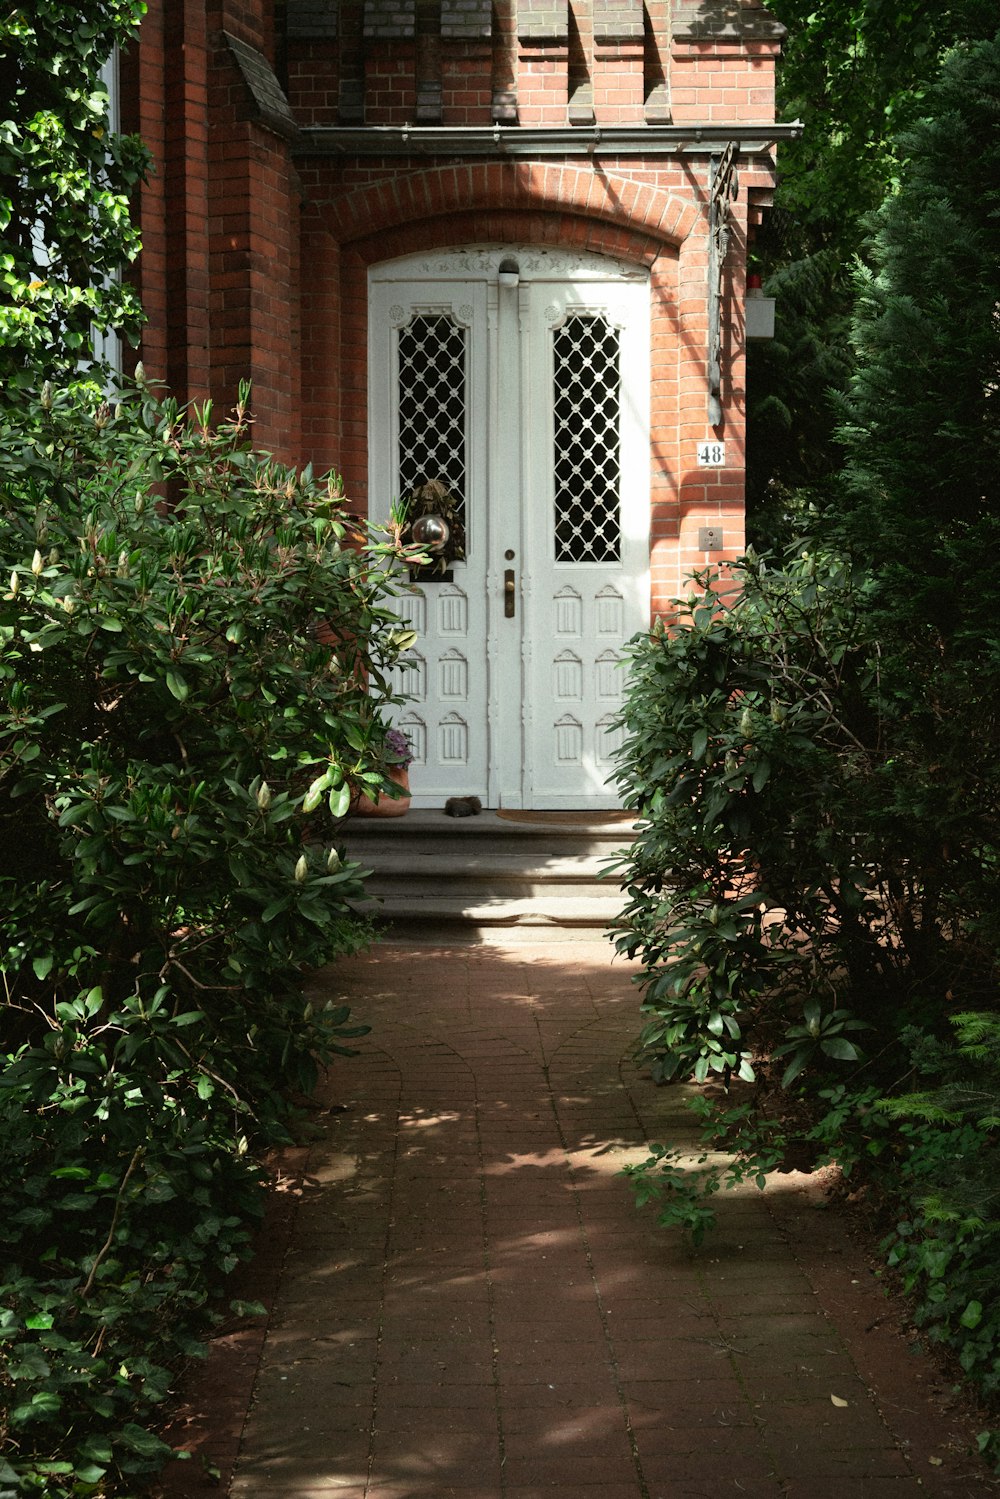 녹지로 둘러싸인 하얀 문이 있는 벽돌집